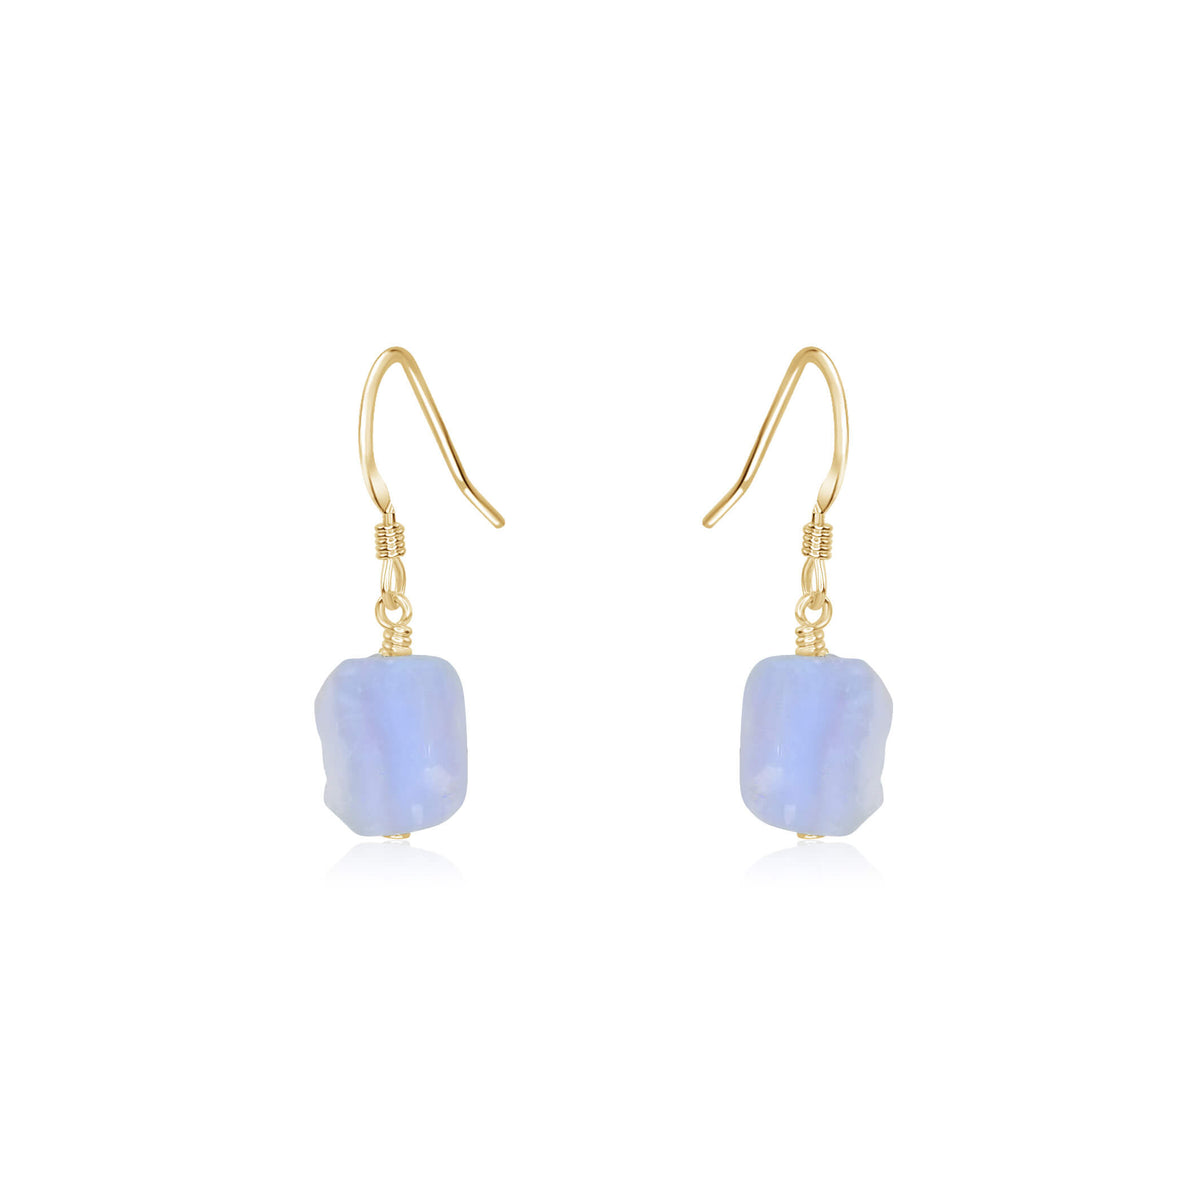 Raw Nugget Earrings - Blue Lace Agate - 14K Gold Fill - Luna Tide Handmade Jewellery